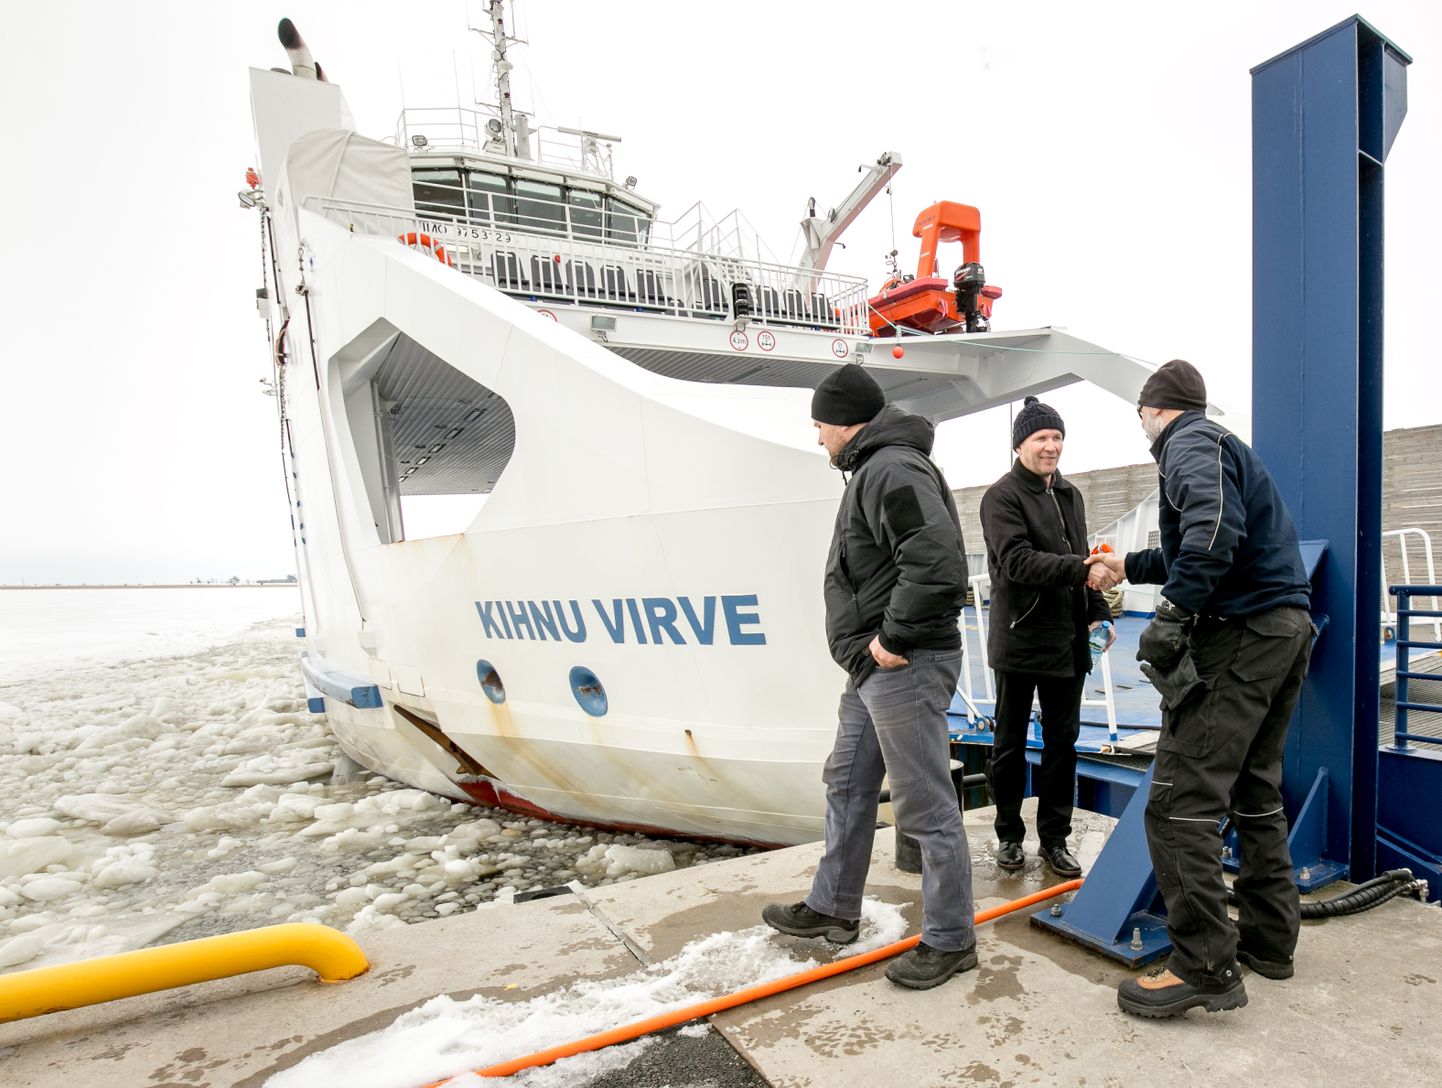 Merepõhja kriipinud parvlaev Kihnu Virve suuri vigastusi ei saanud ja on merekõlbulik.